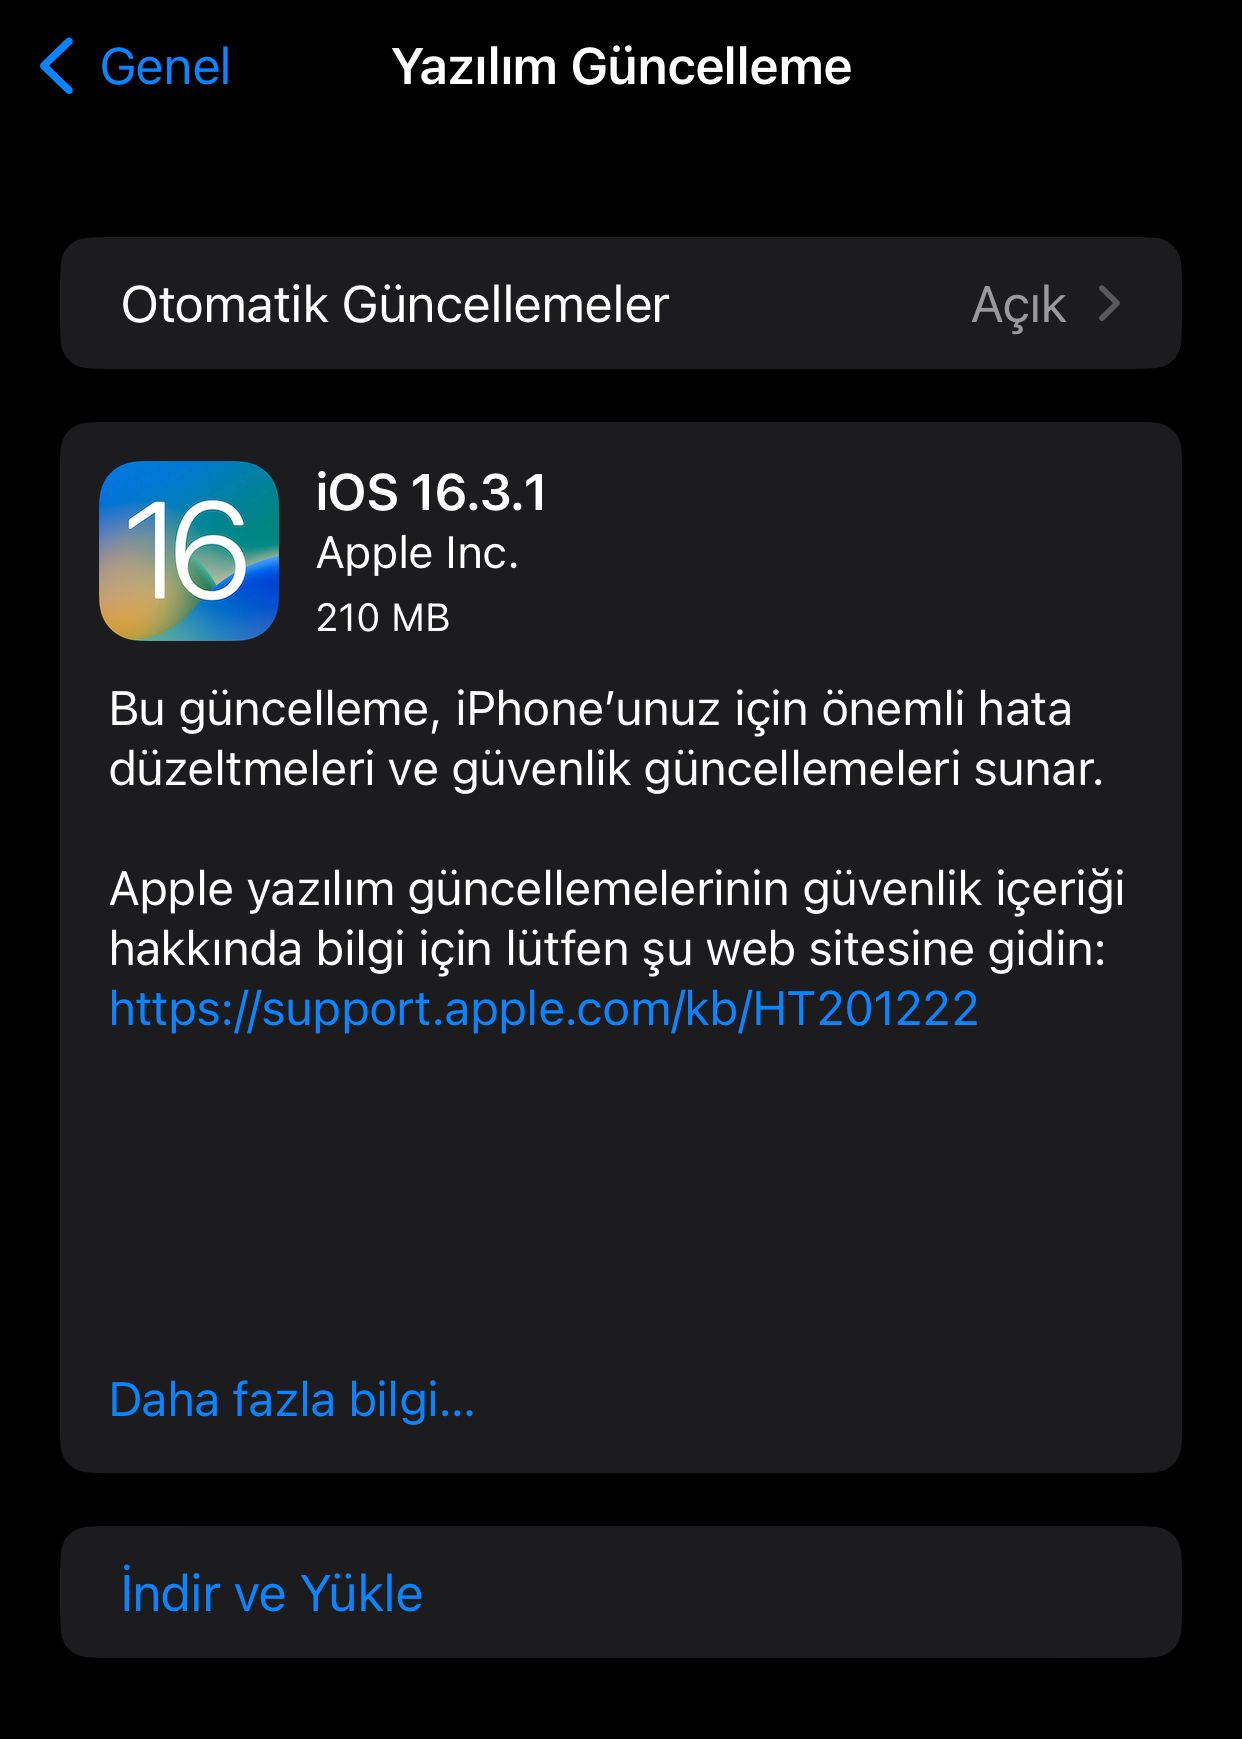 iOS 16.3.1 güncellemesi önemli iyileştirmeler ile karşımıza çıkıyor